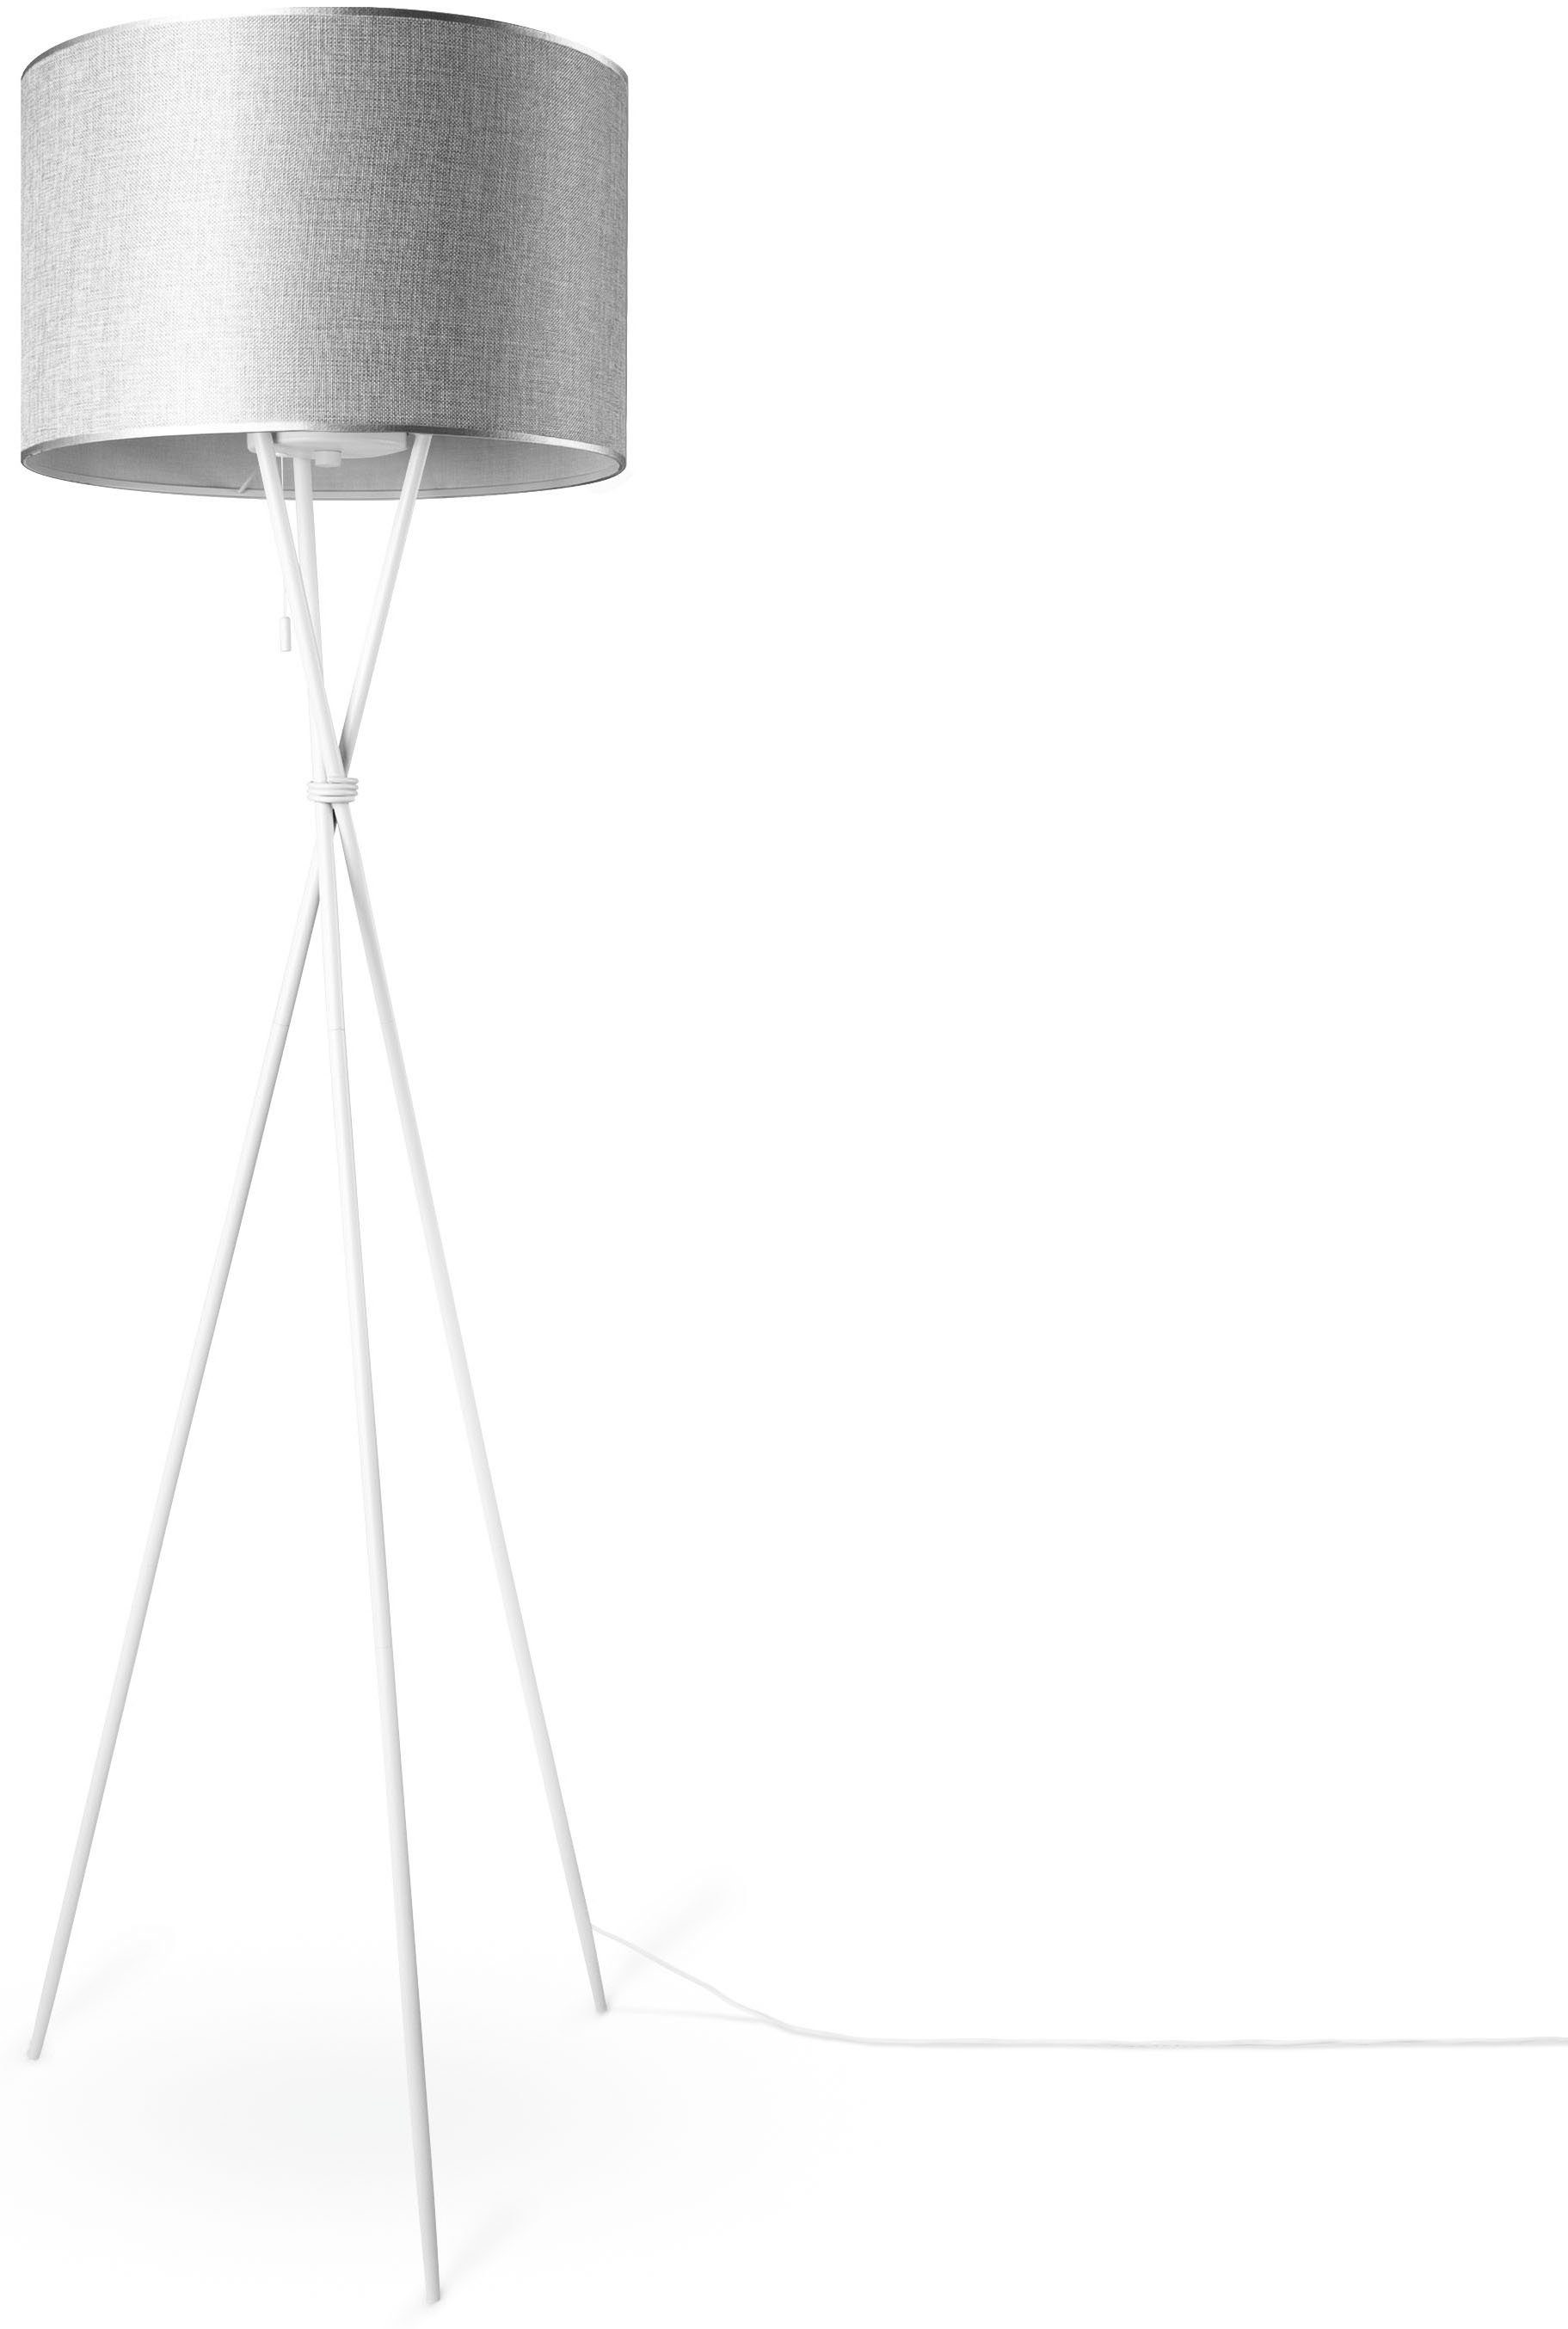 Paco Home Stoffschirmlampe Standleuchte E27 Stehlampe Dreibein grau KATE Wohnzimmer Schirm ohne Leuchtmittel, weiß UNI COLOR, CANVAS Textil